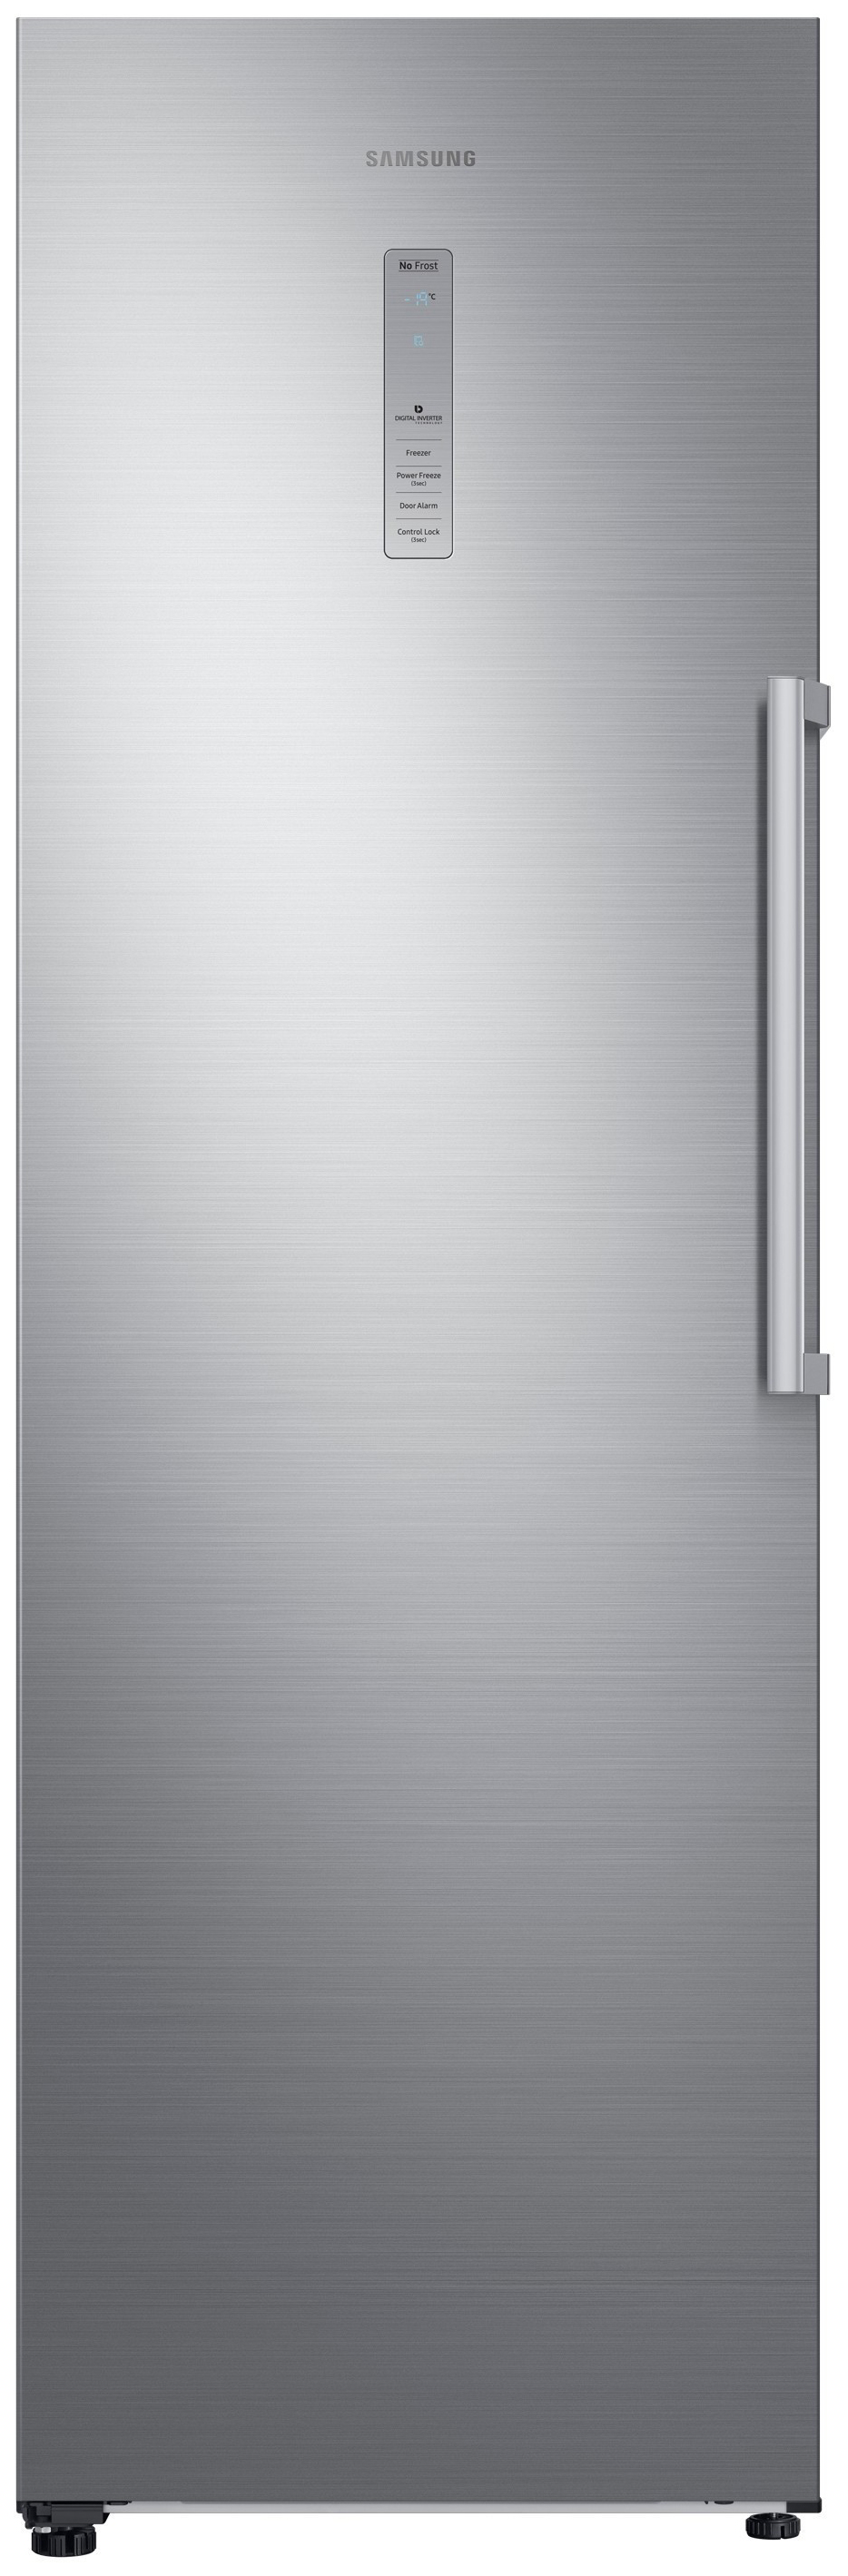 Холодильник Samsung RR 39 M 7140SAWT серебристый холодильник samsung rs64r5331b4